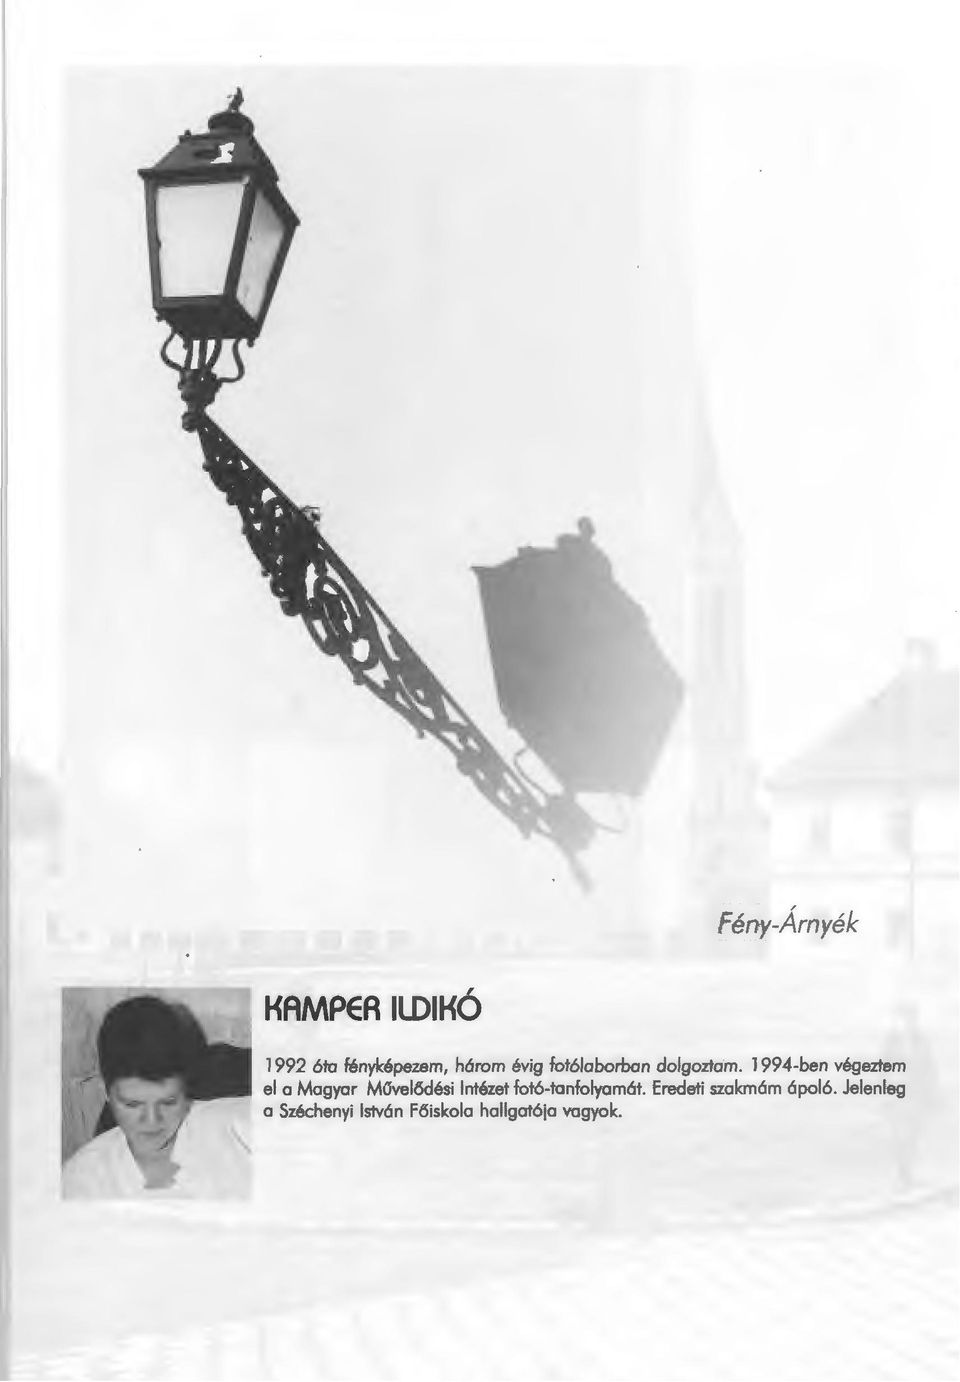 1994-ben vegeztem el a Magyar Mavel5desi lntezet